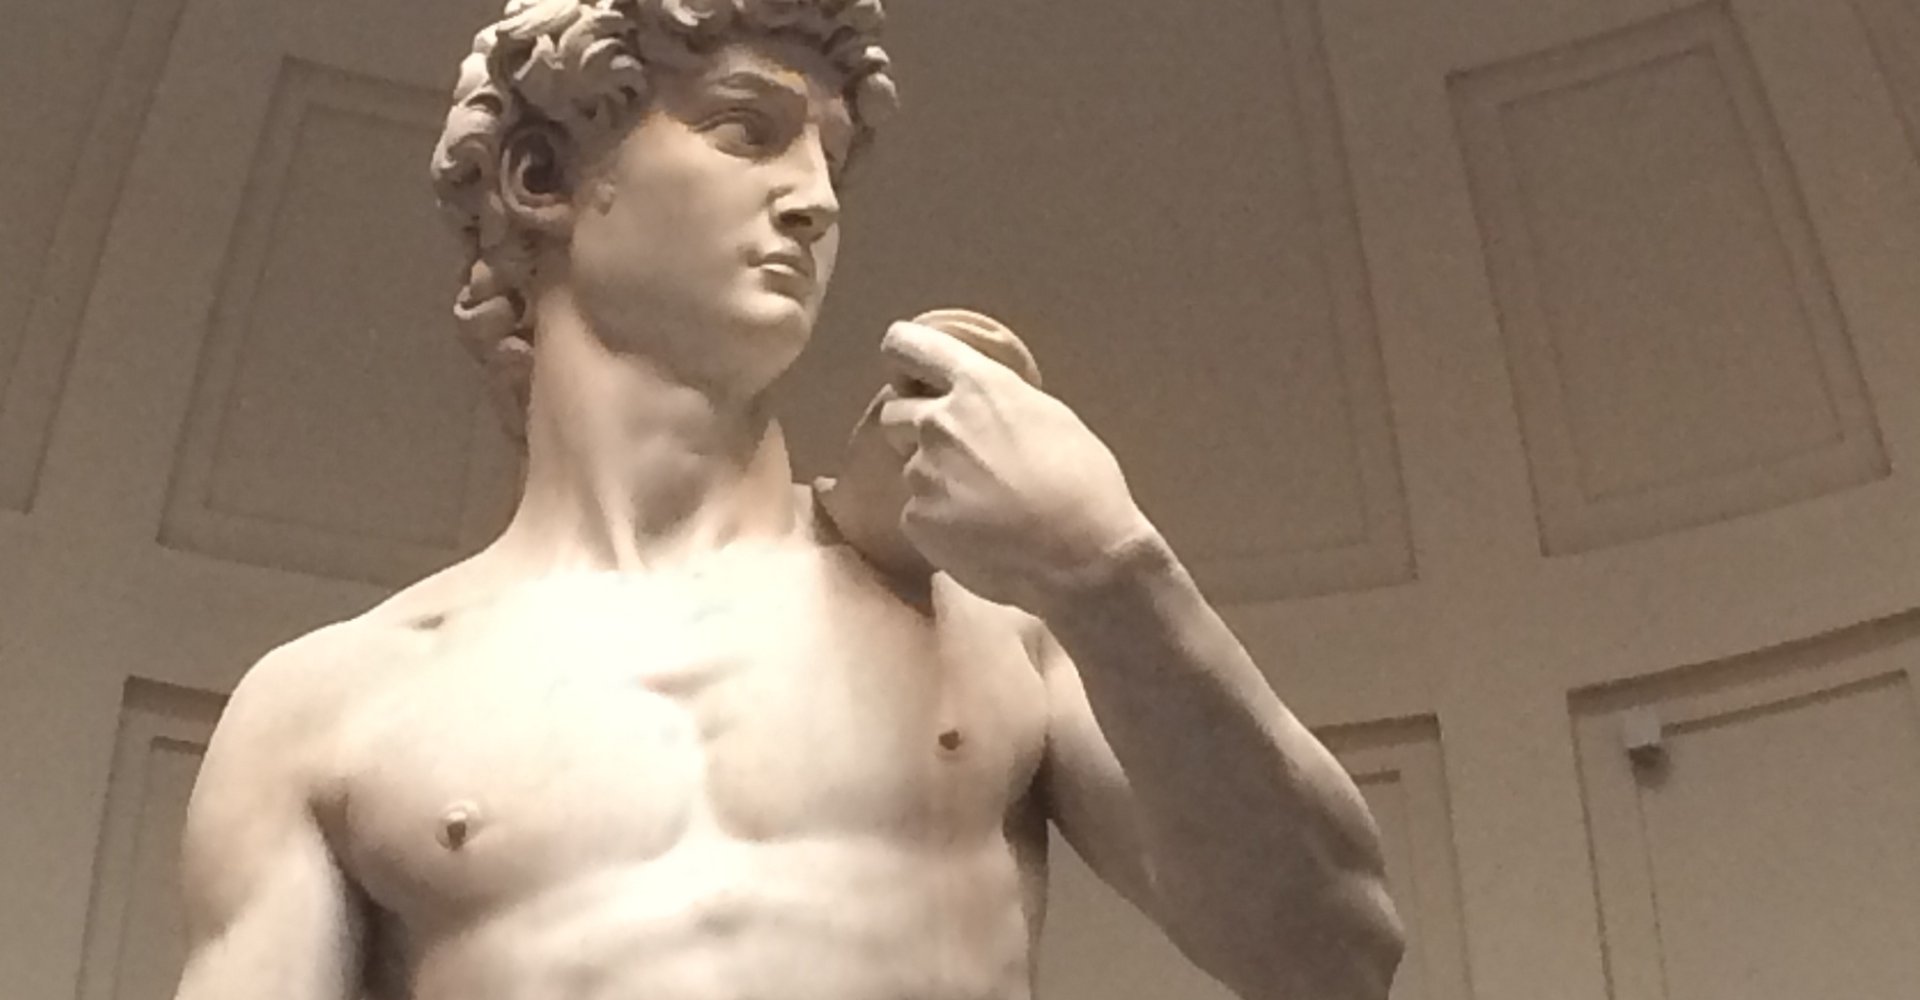 Galería de la Academia: El David de Michelangelo